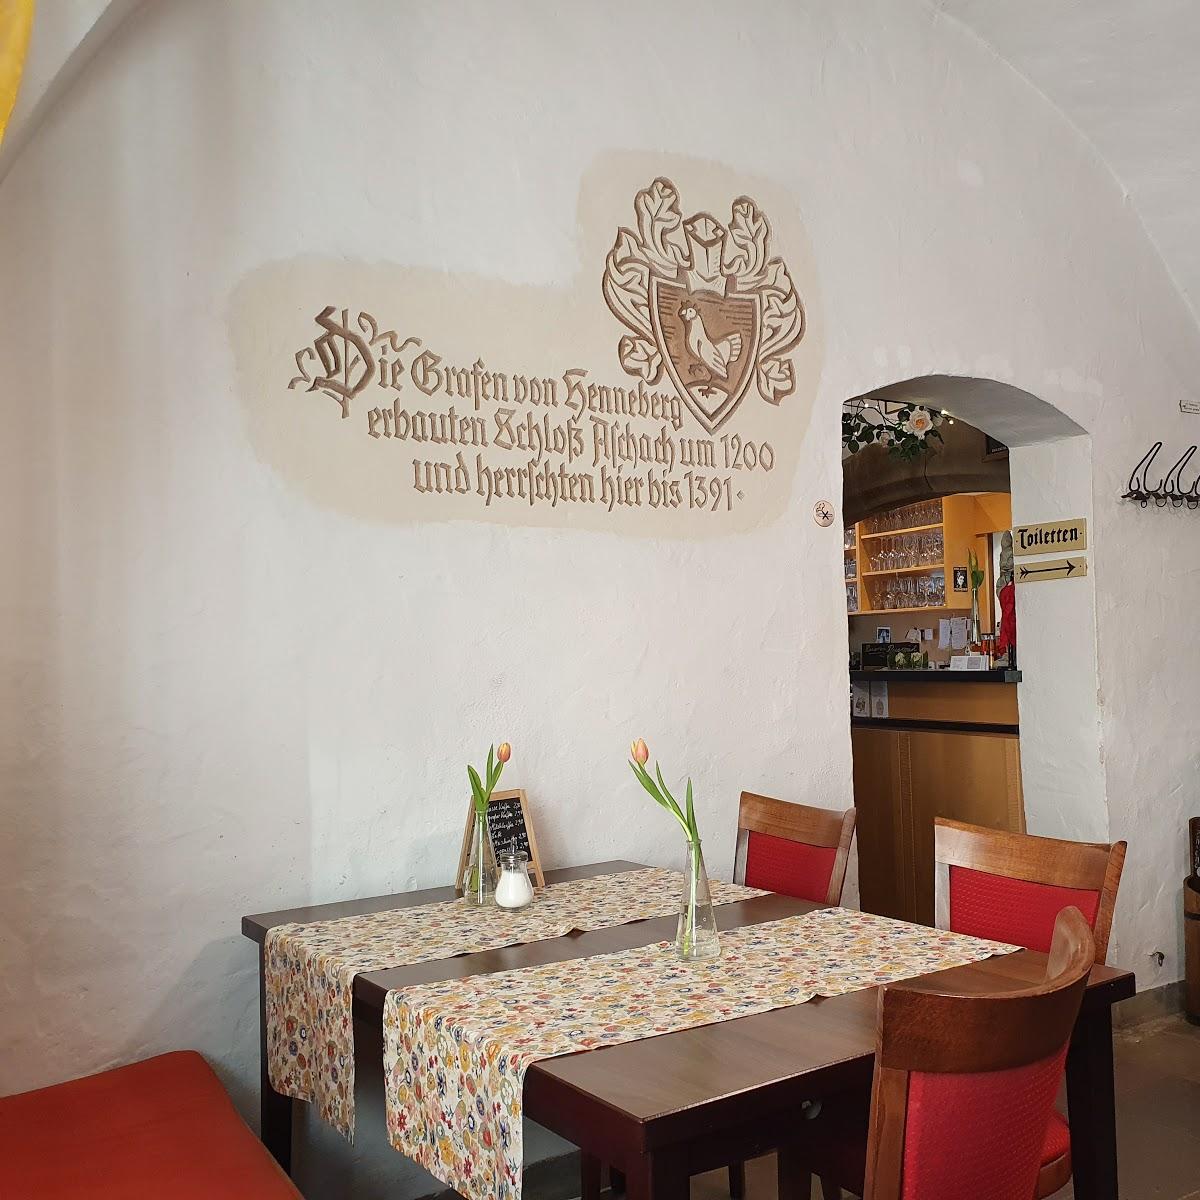 Restaurant "Aschacher Schlossstuben" in Bad Bocklet